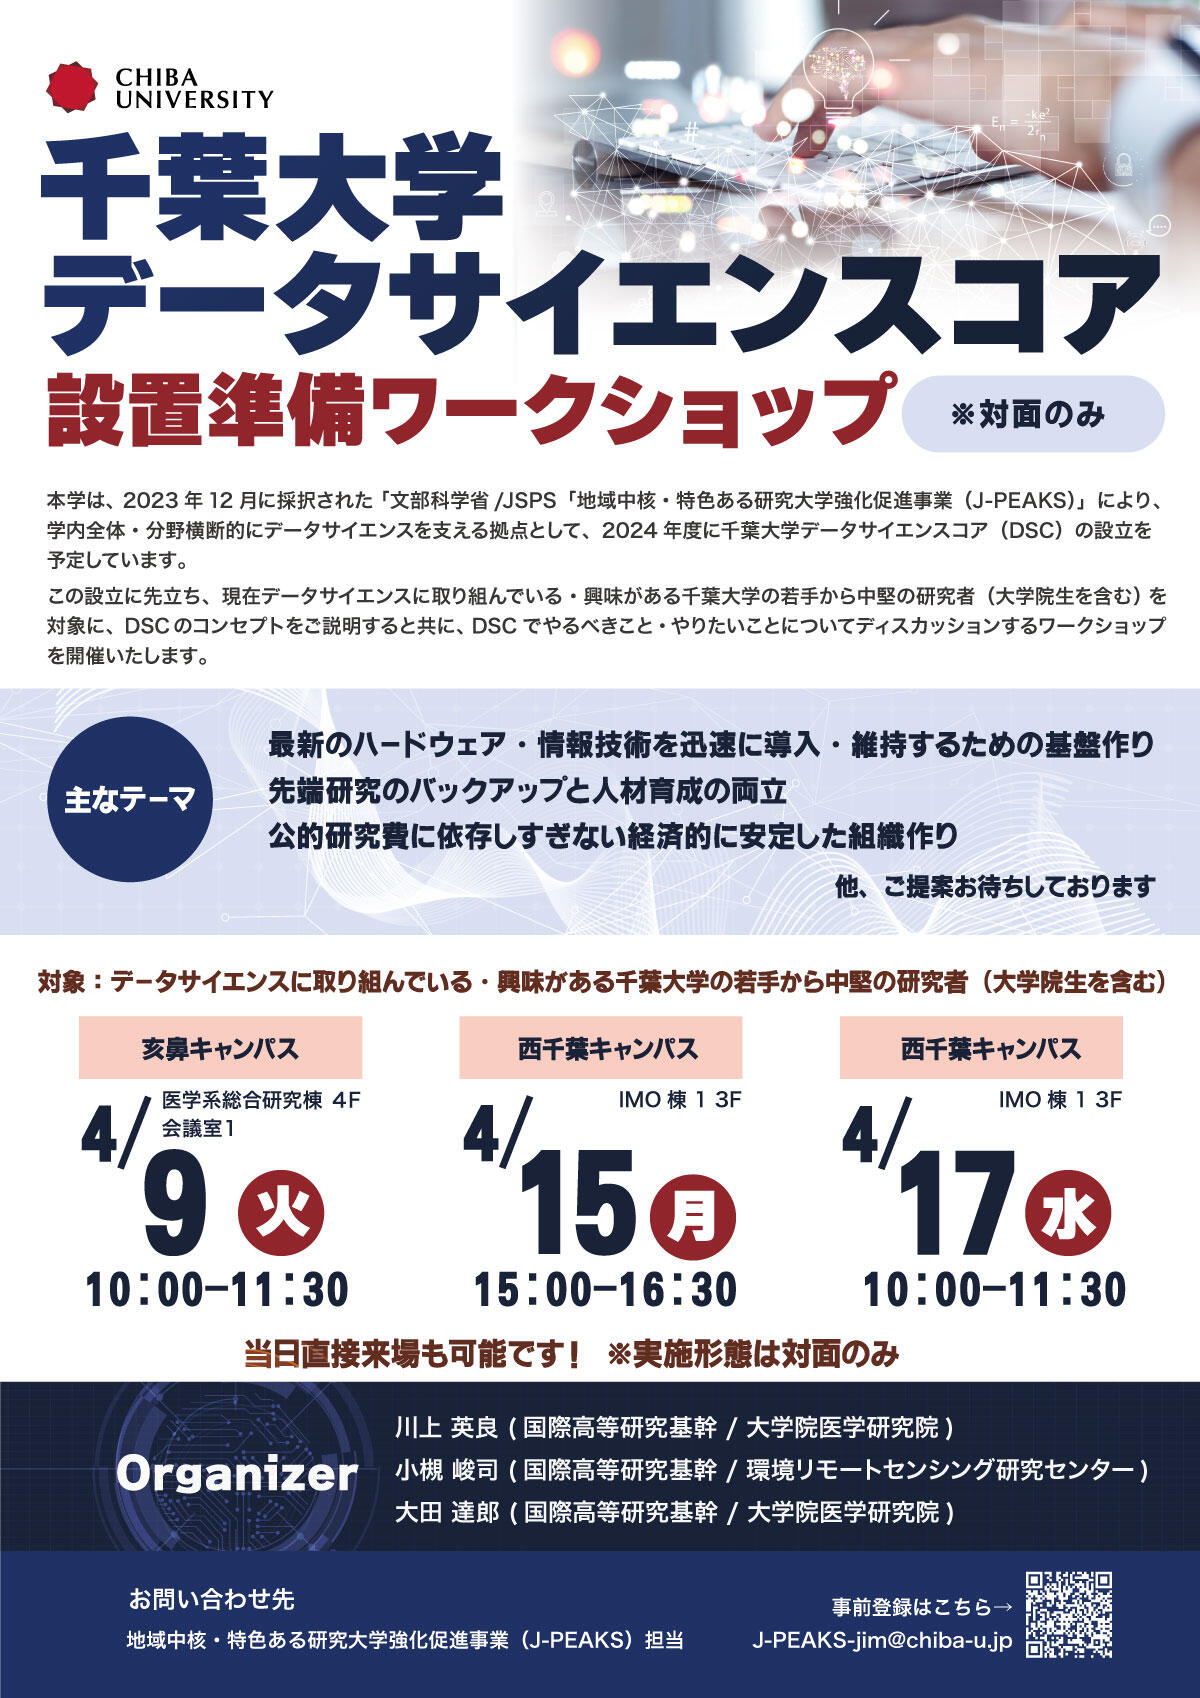 【4/9,4/15,4/17】千葉大学データサイエンスコア 設置準備ワークショップの開催について